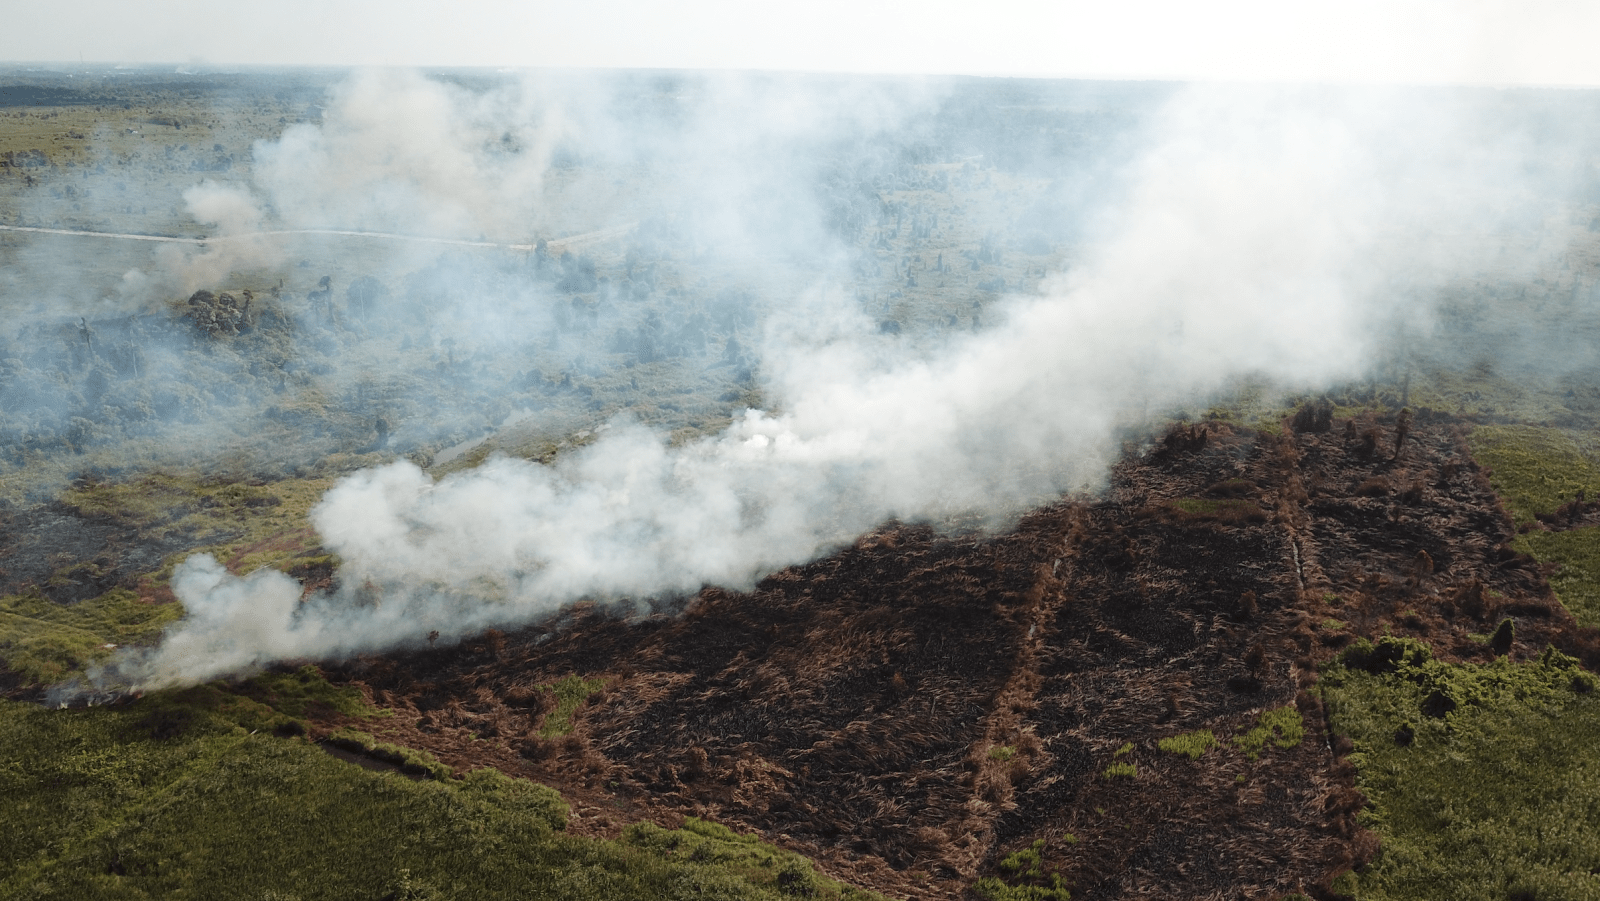 Kebakaran Lahan di Sungai Awan Kiri, IAR Indonesia Padamkan Api Bersama Jajaran Kepolisian, TNI, Manggala Agni dan BPBD